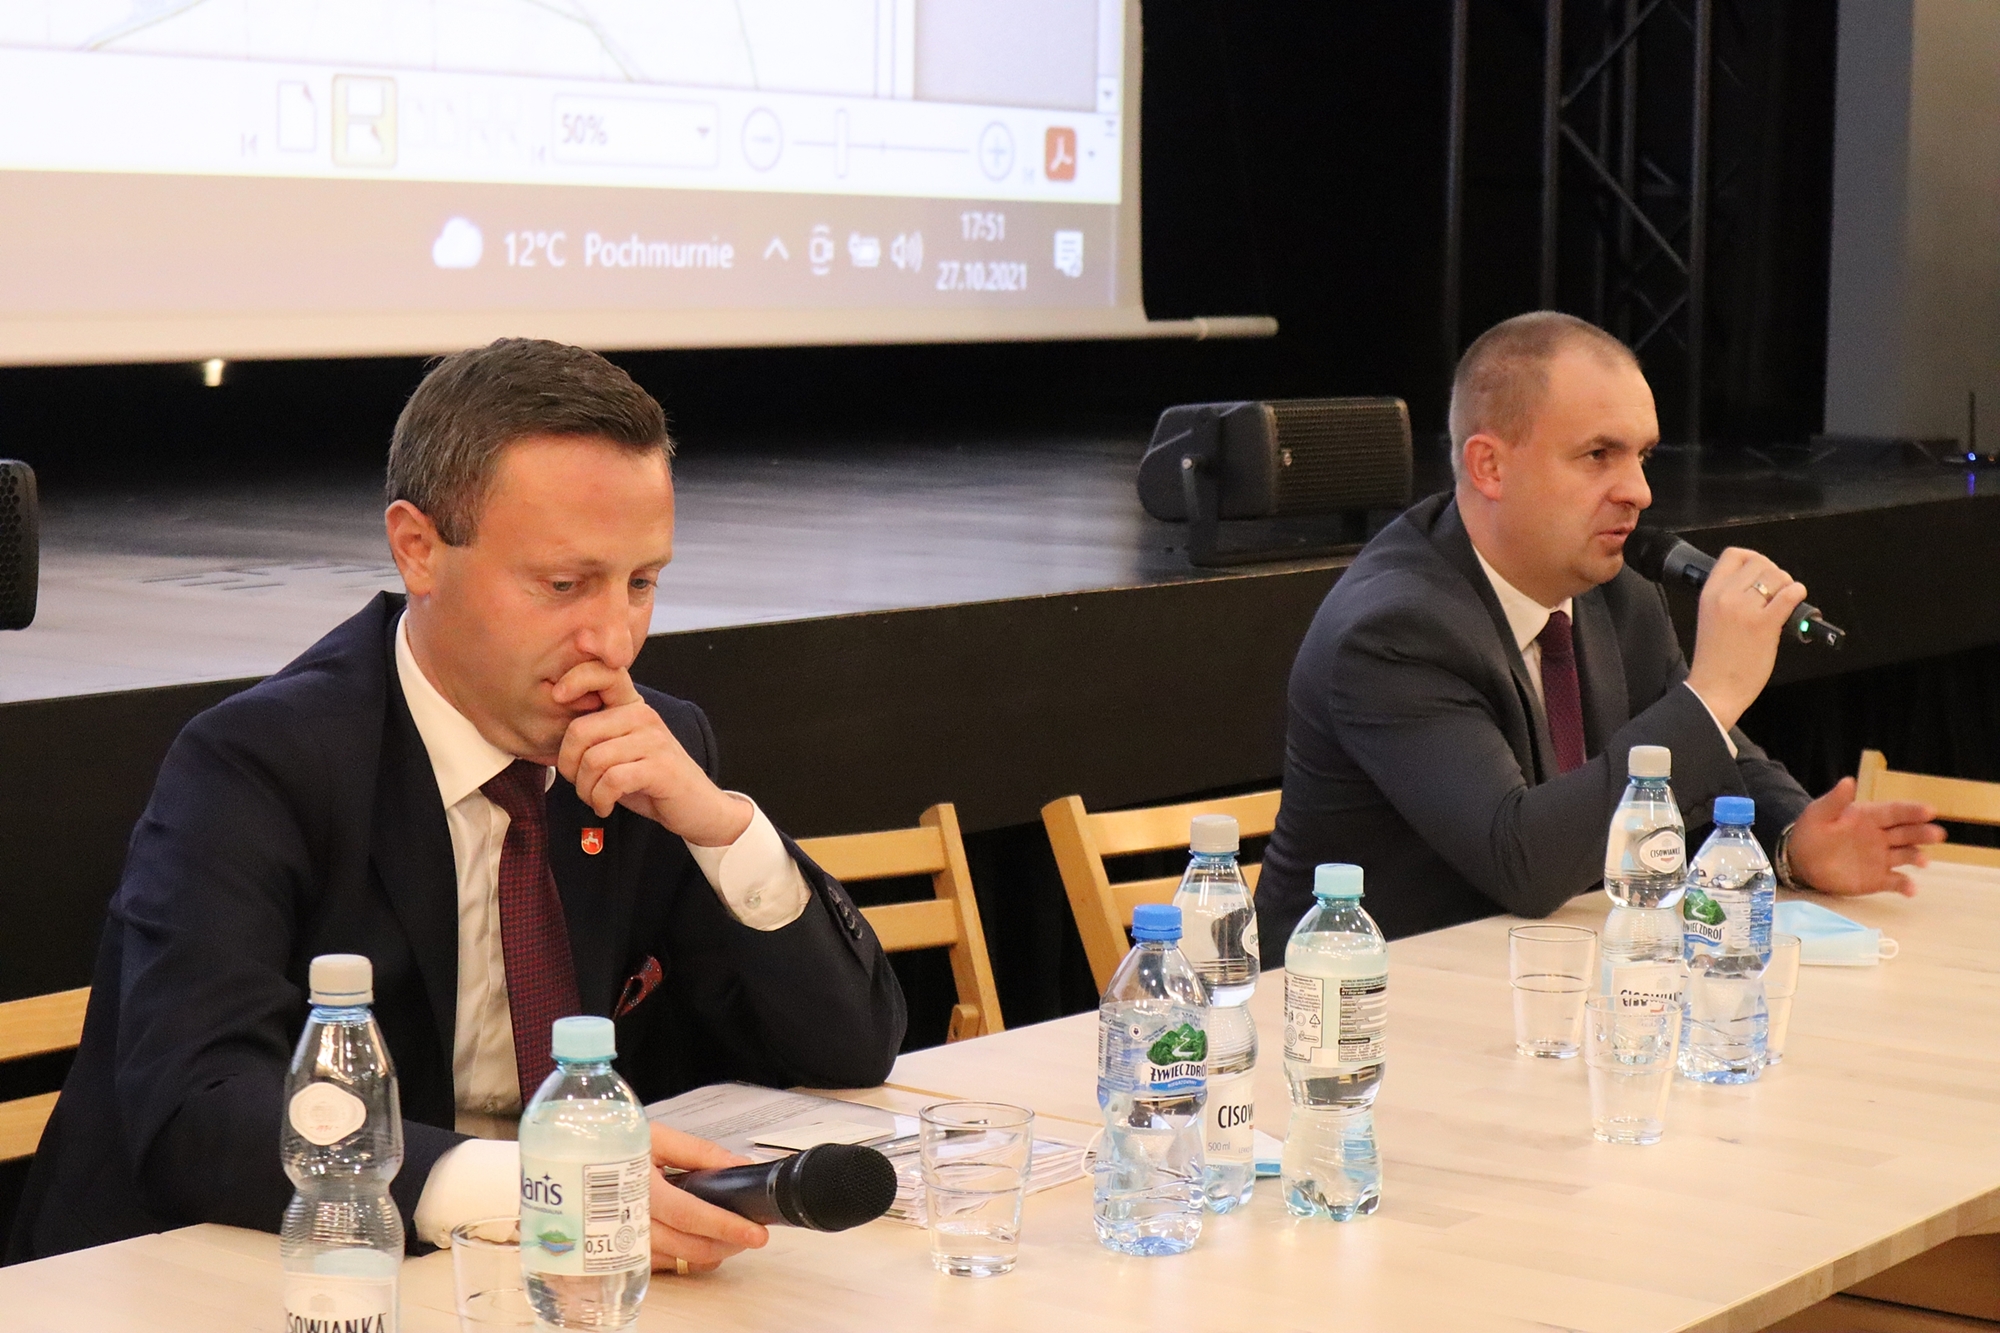 Na zdjęciu, z prawej strony widzimy dyrektora Zarządu Dróg Wojewódzkich w Lublinie Pawła Szumerę, który siedząc za stołem, odpowiada na pytania mieszkańców Tarnogrodu. Z lewej strony widzimy natomiast siedzącego wicemarszałka Michała Mulawę.